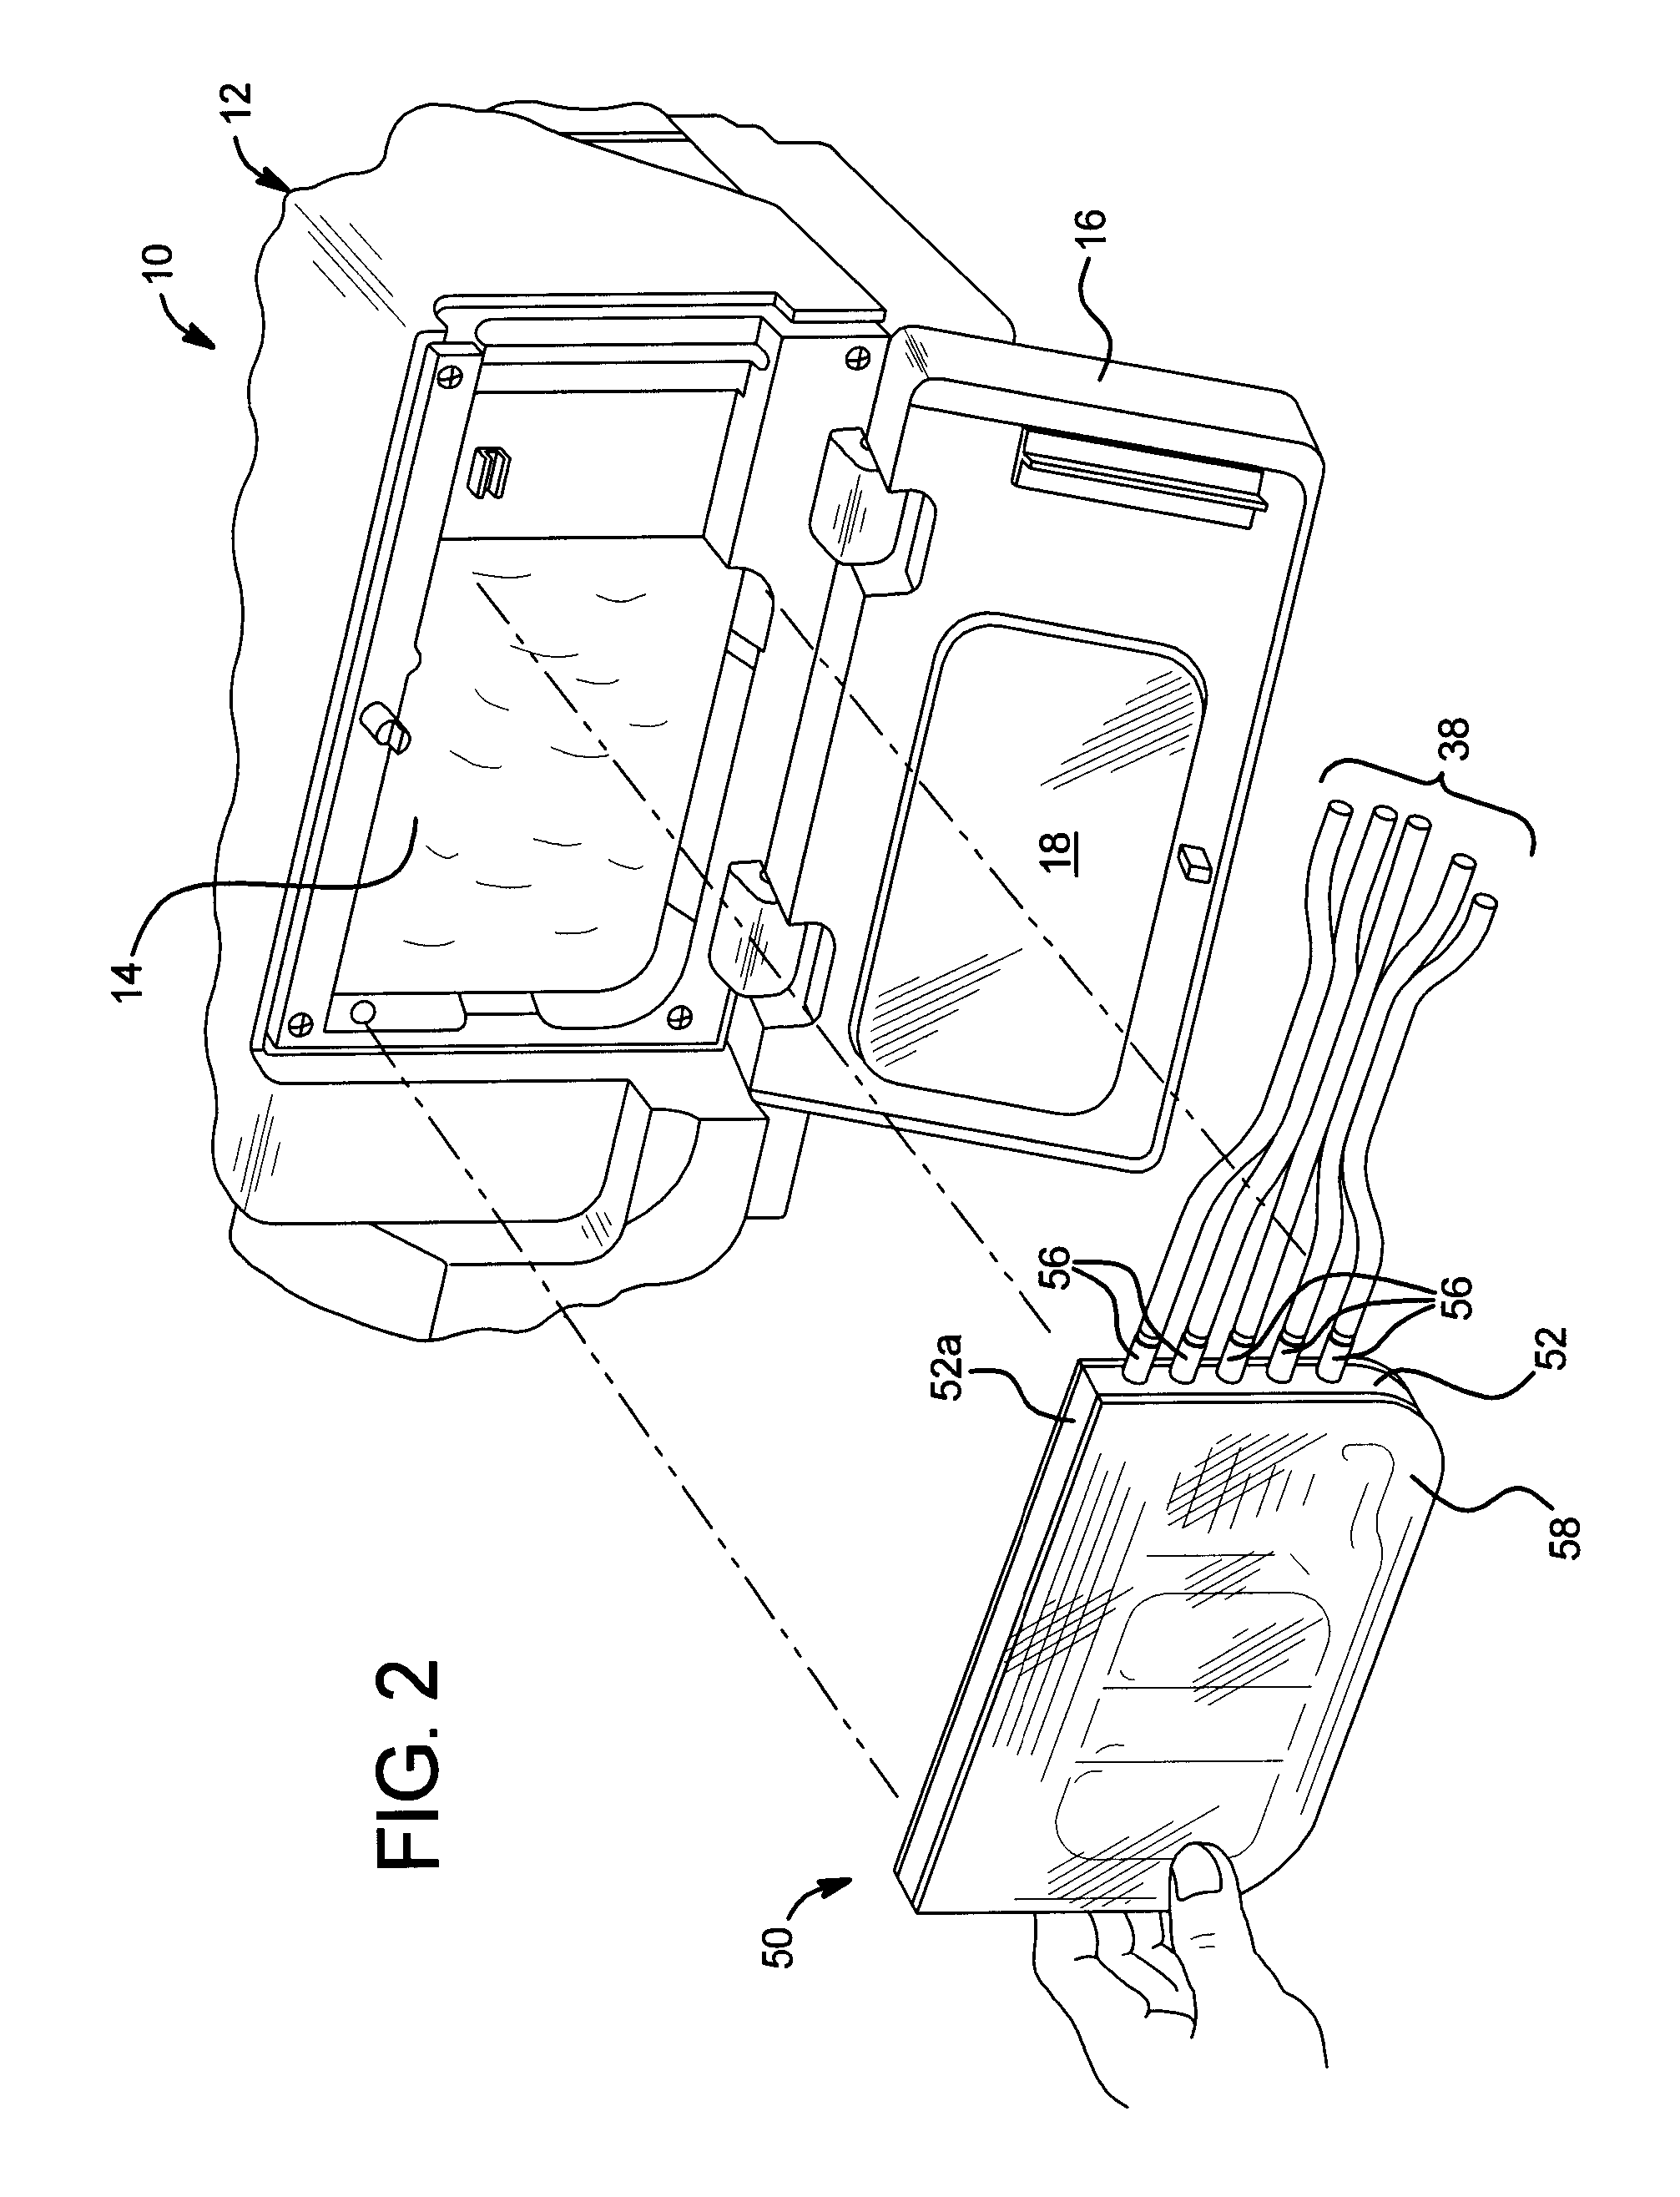 Dialysis cassette having multiple outlet valve